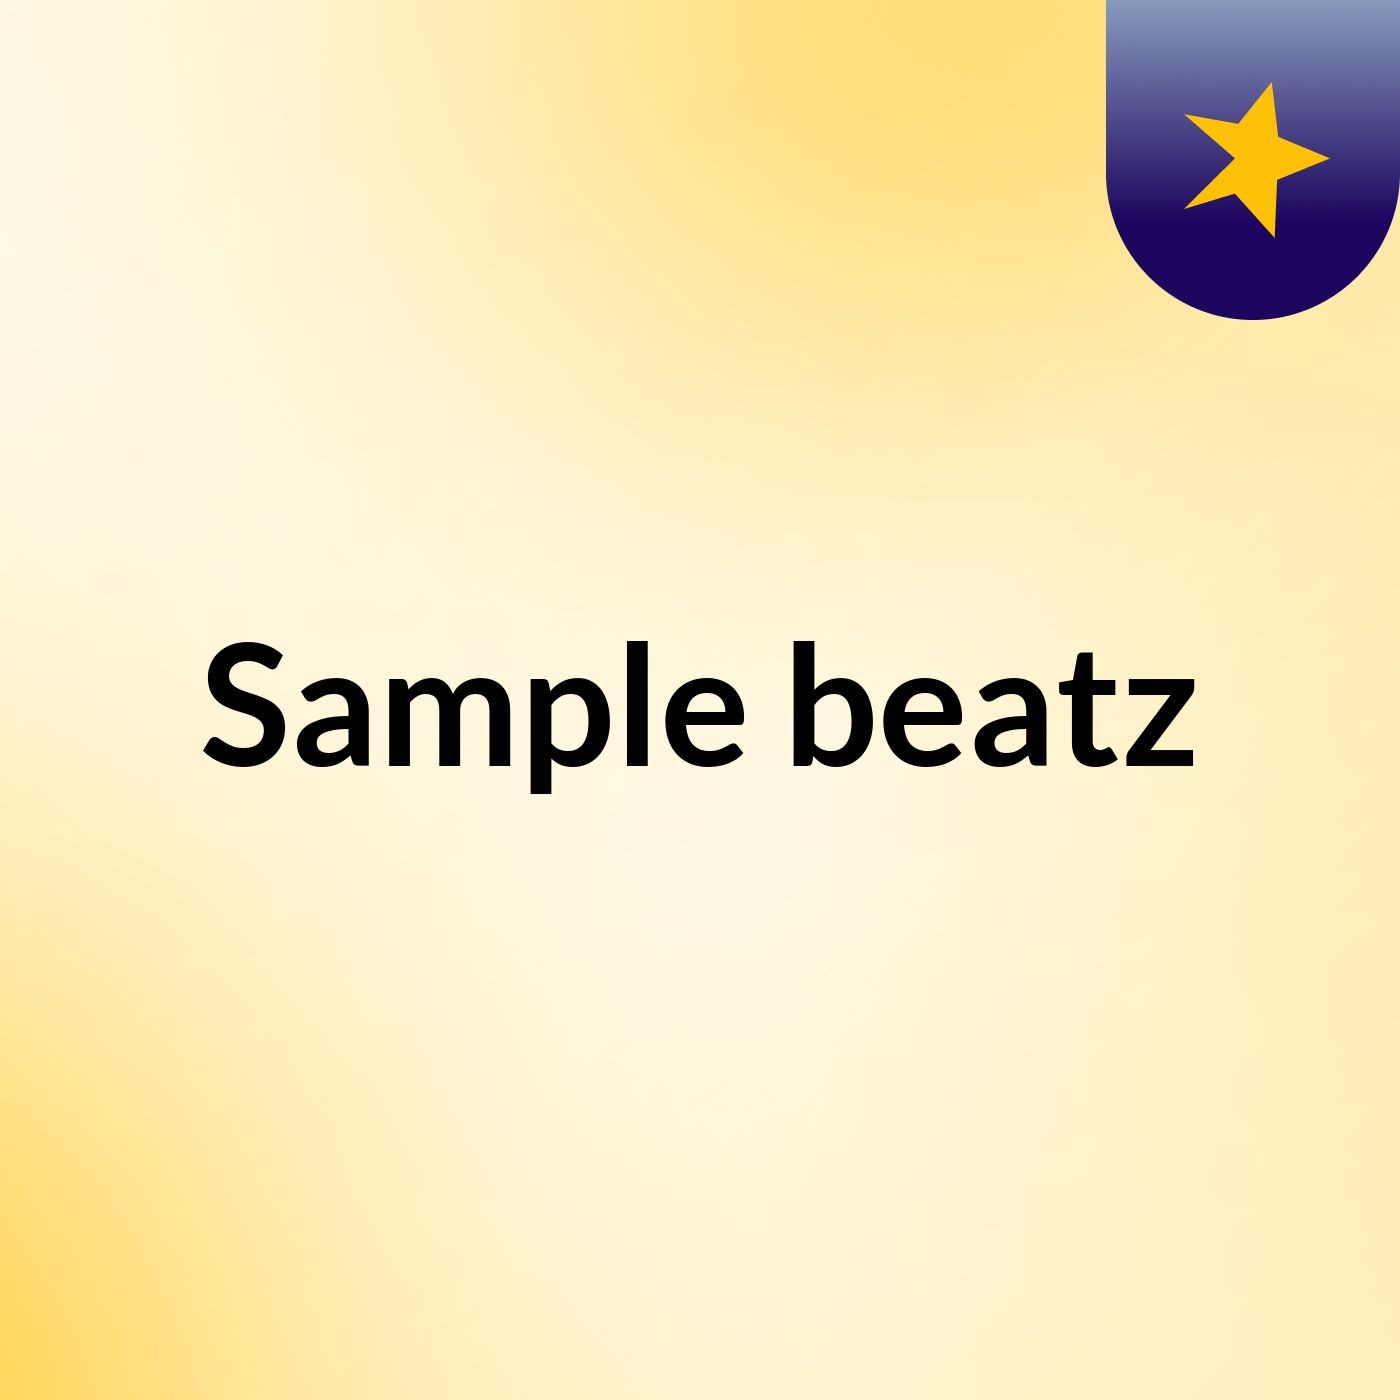 Sample beatz